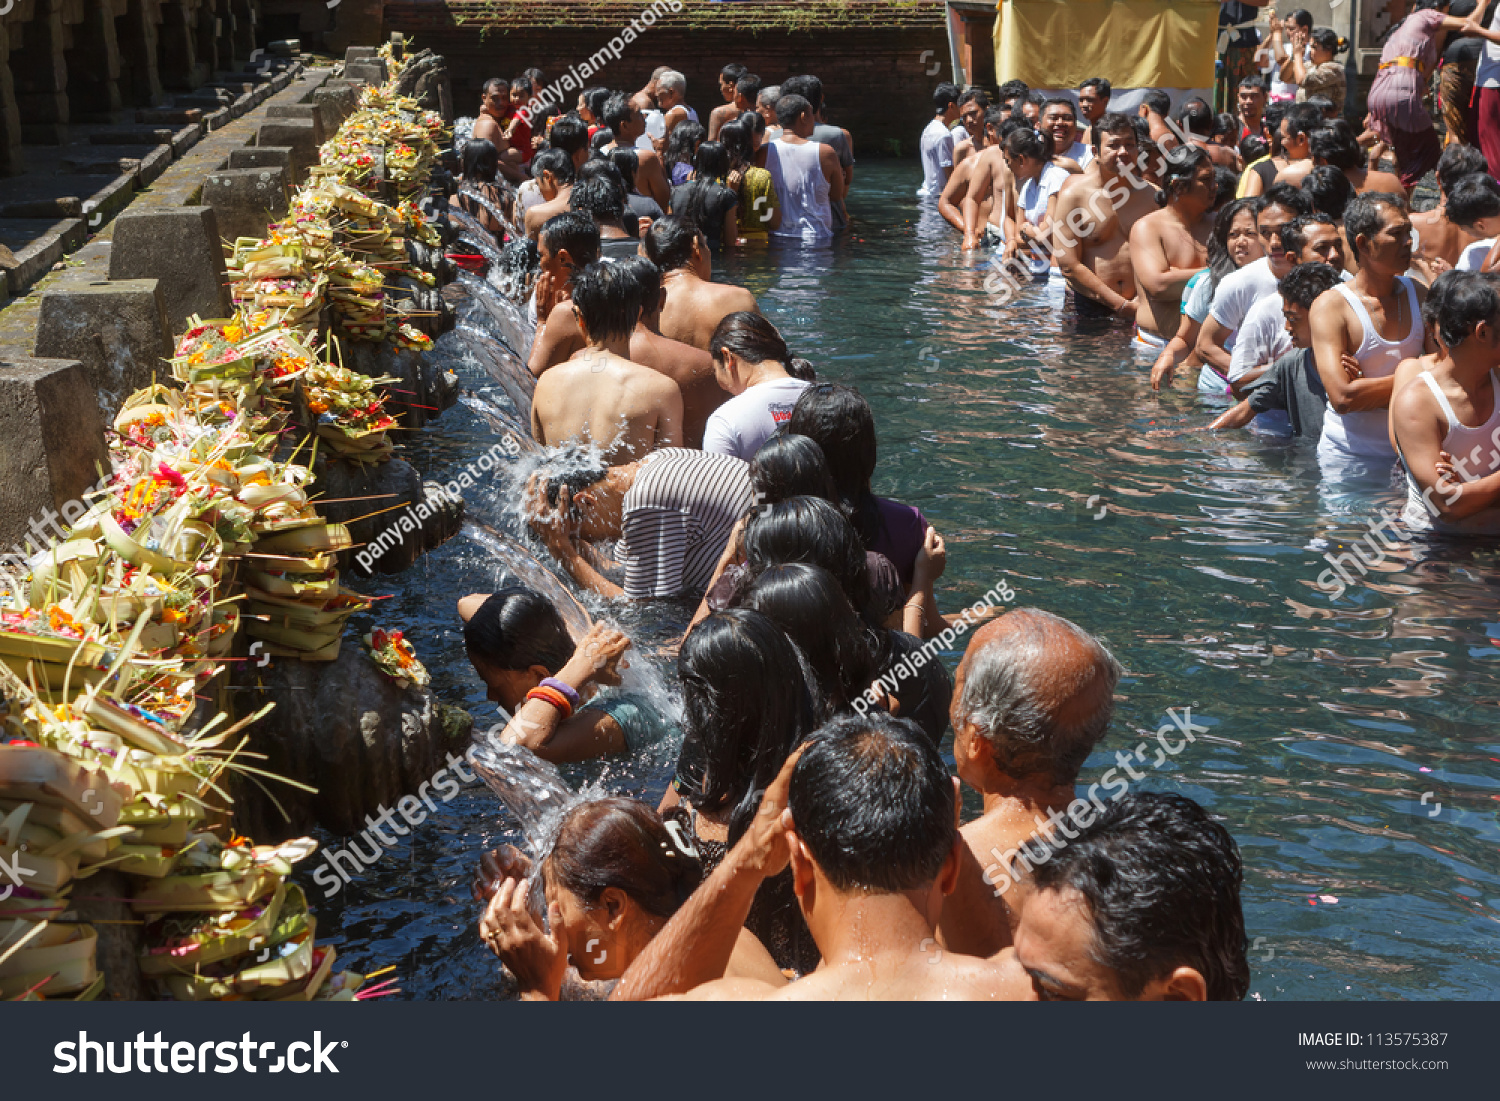 Tampak Siring, Bali, Indonesia .19 August 2012.People Praying At Holy